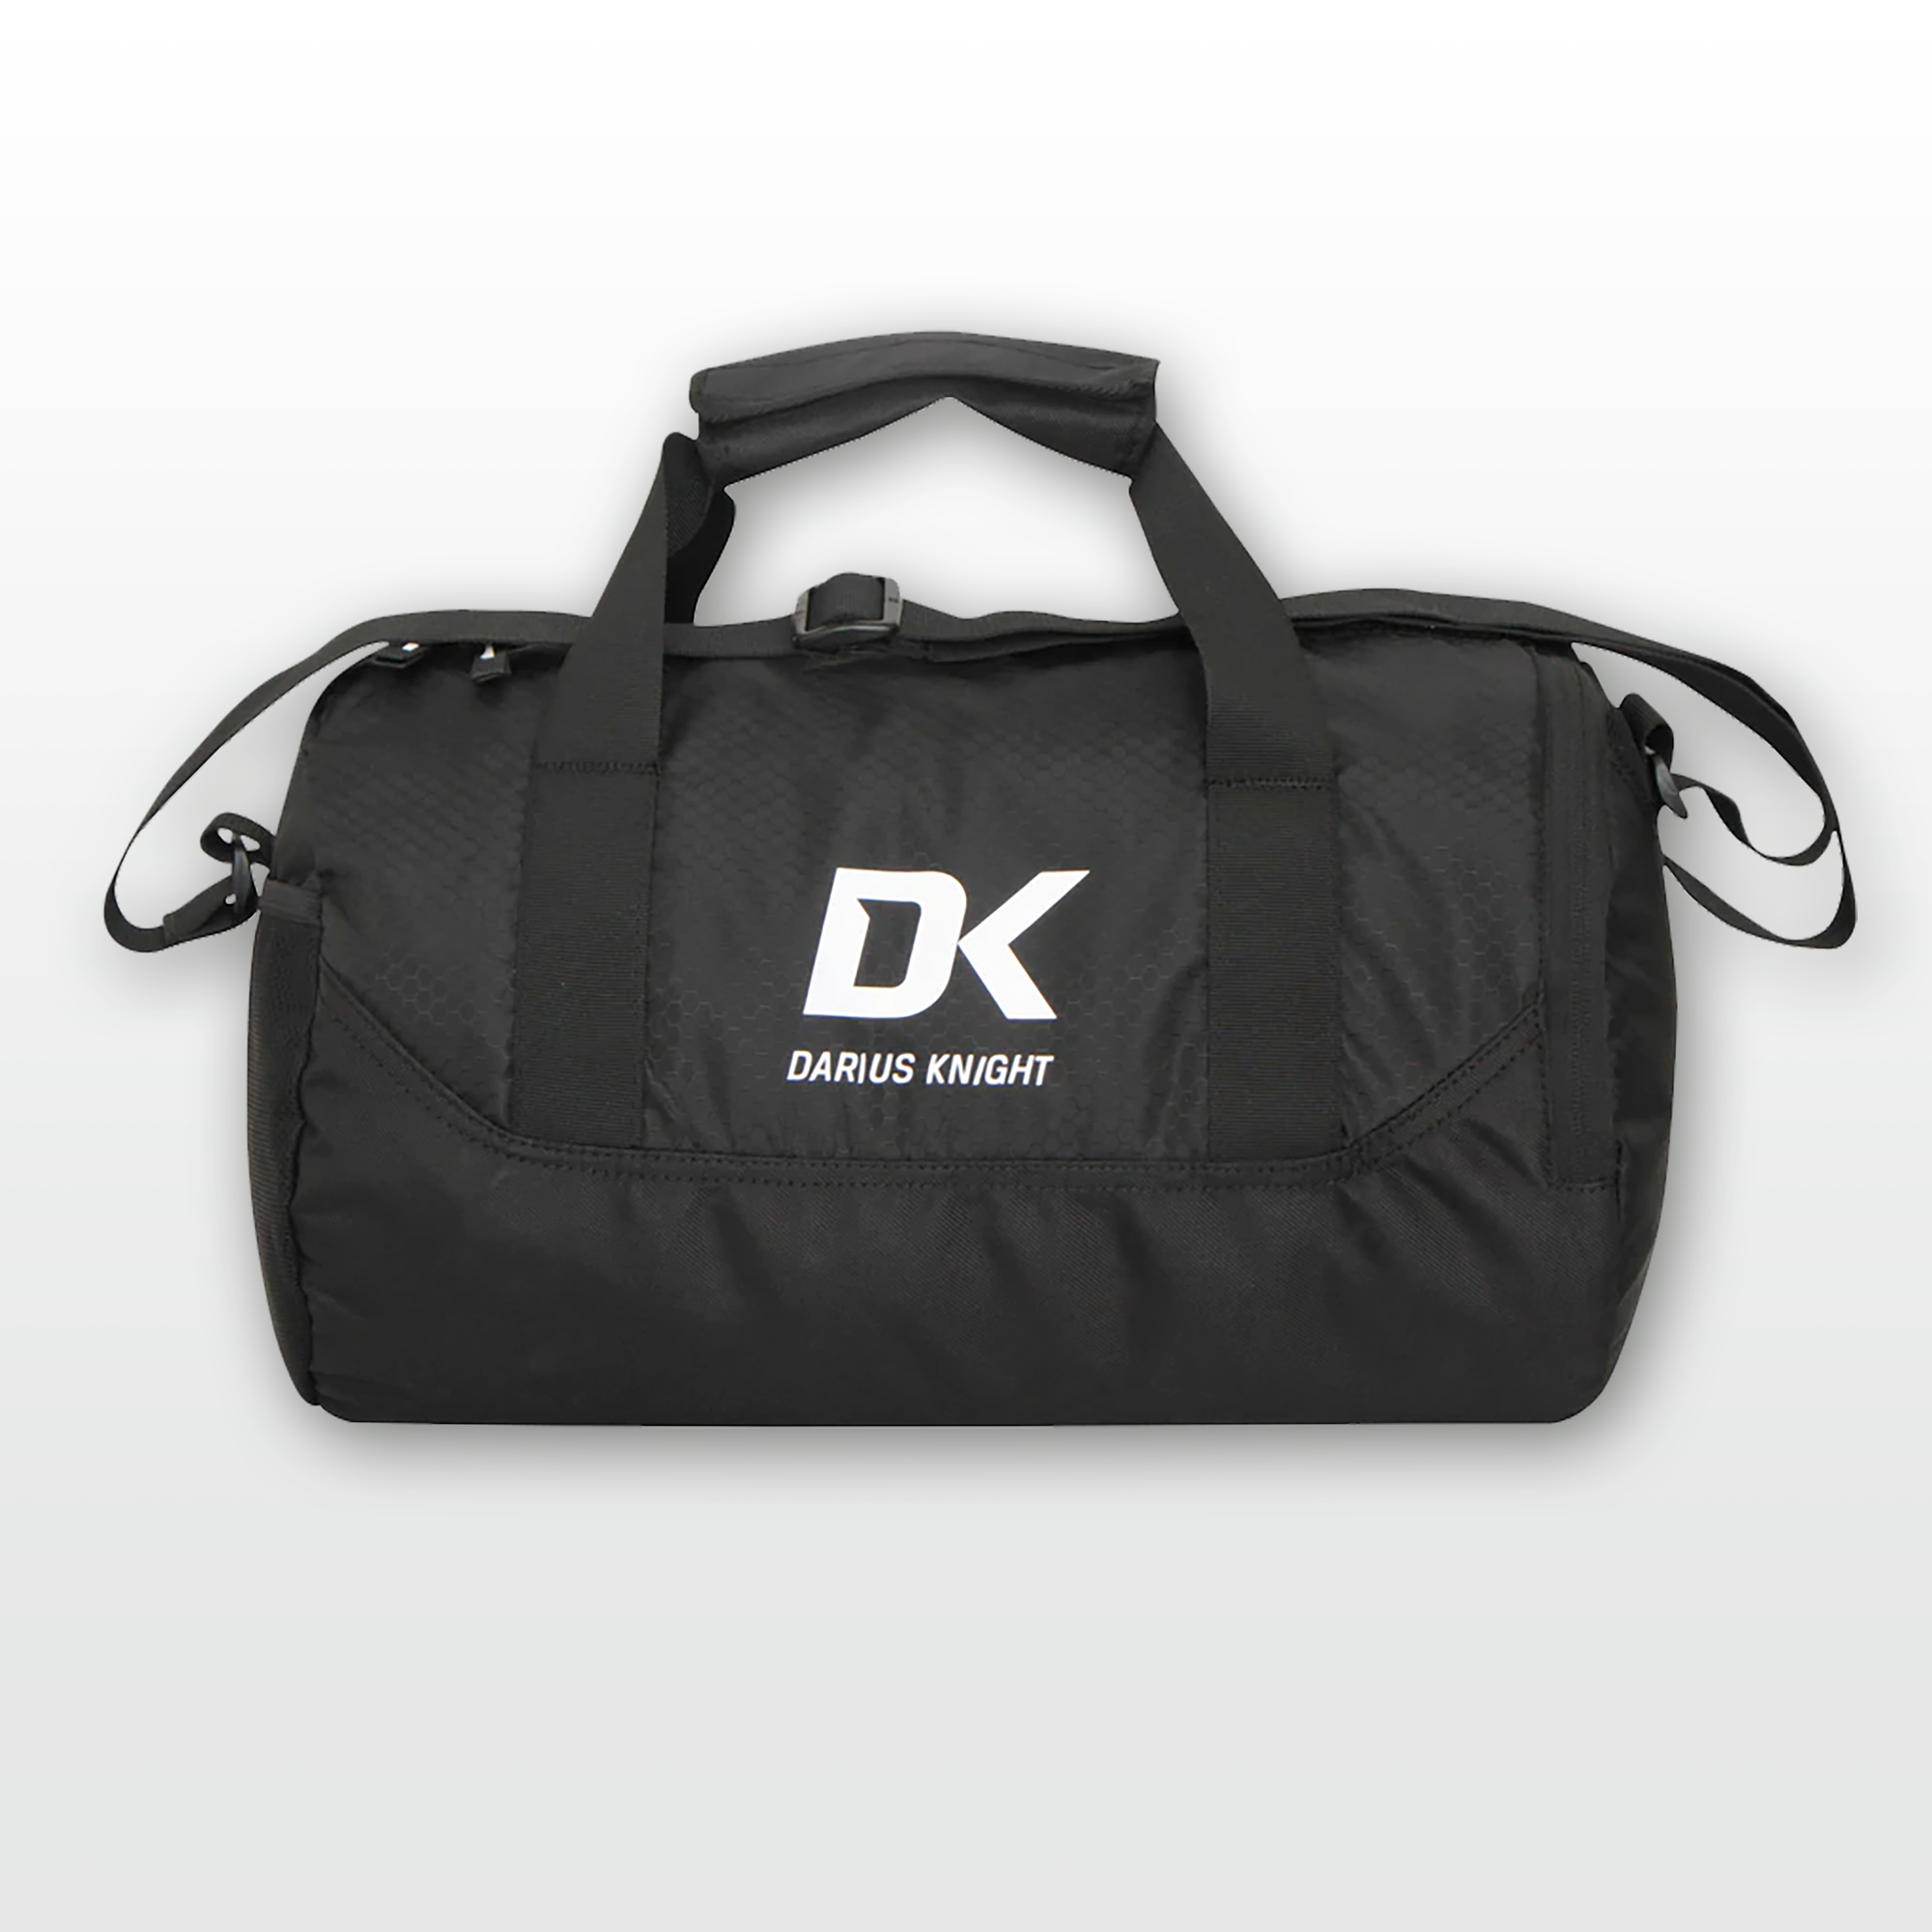 DK Pro Midi bag - DK Sports